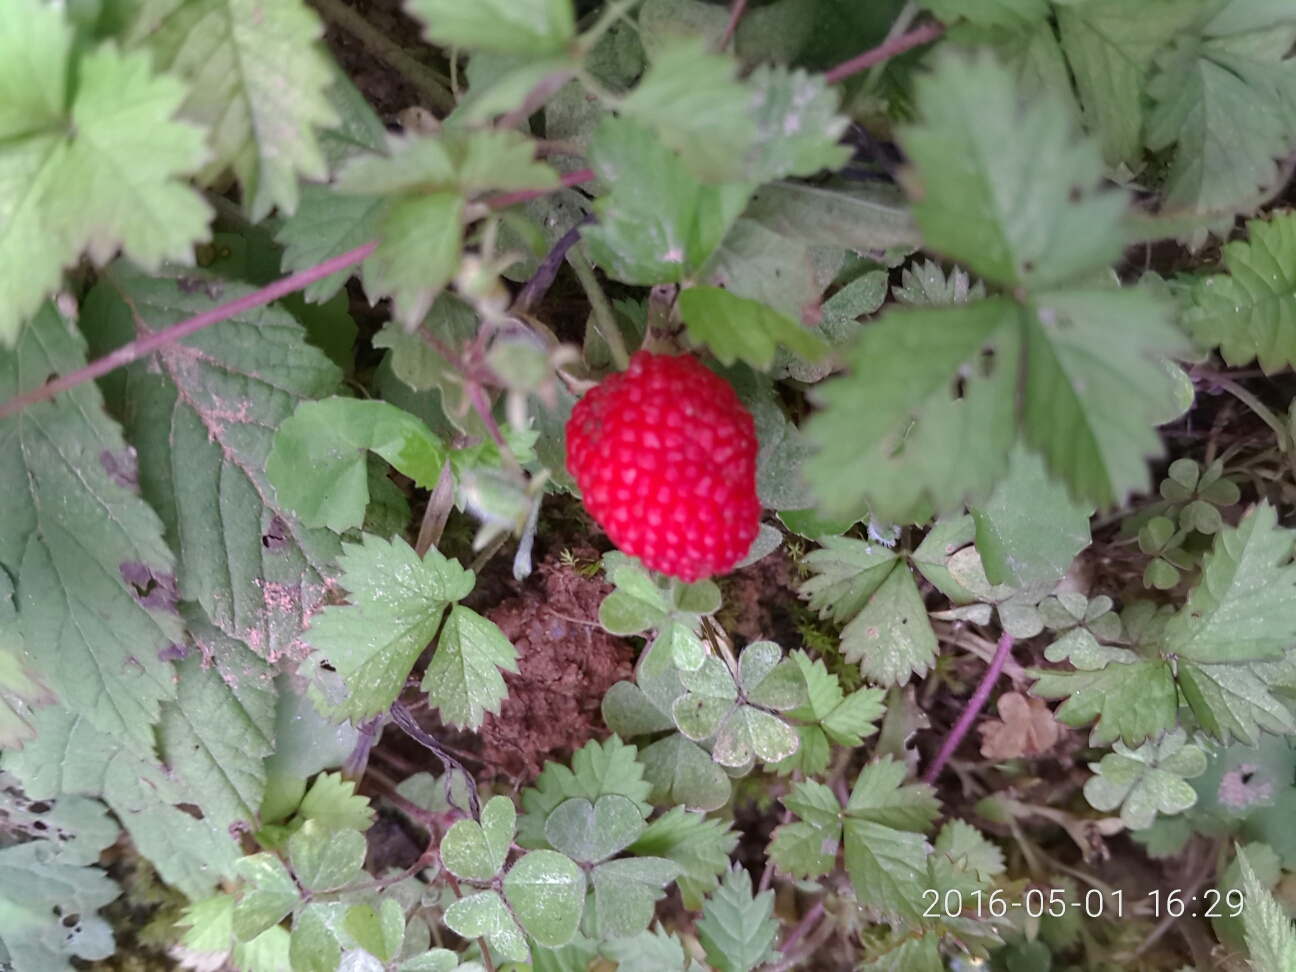 野生草莓,儿时的回忆-摄影天地-魅族社区